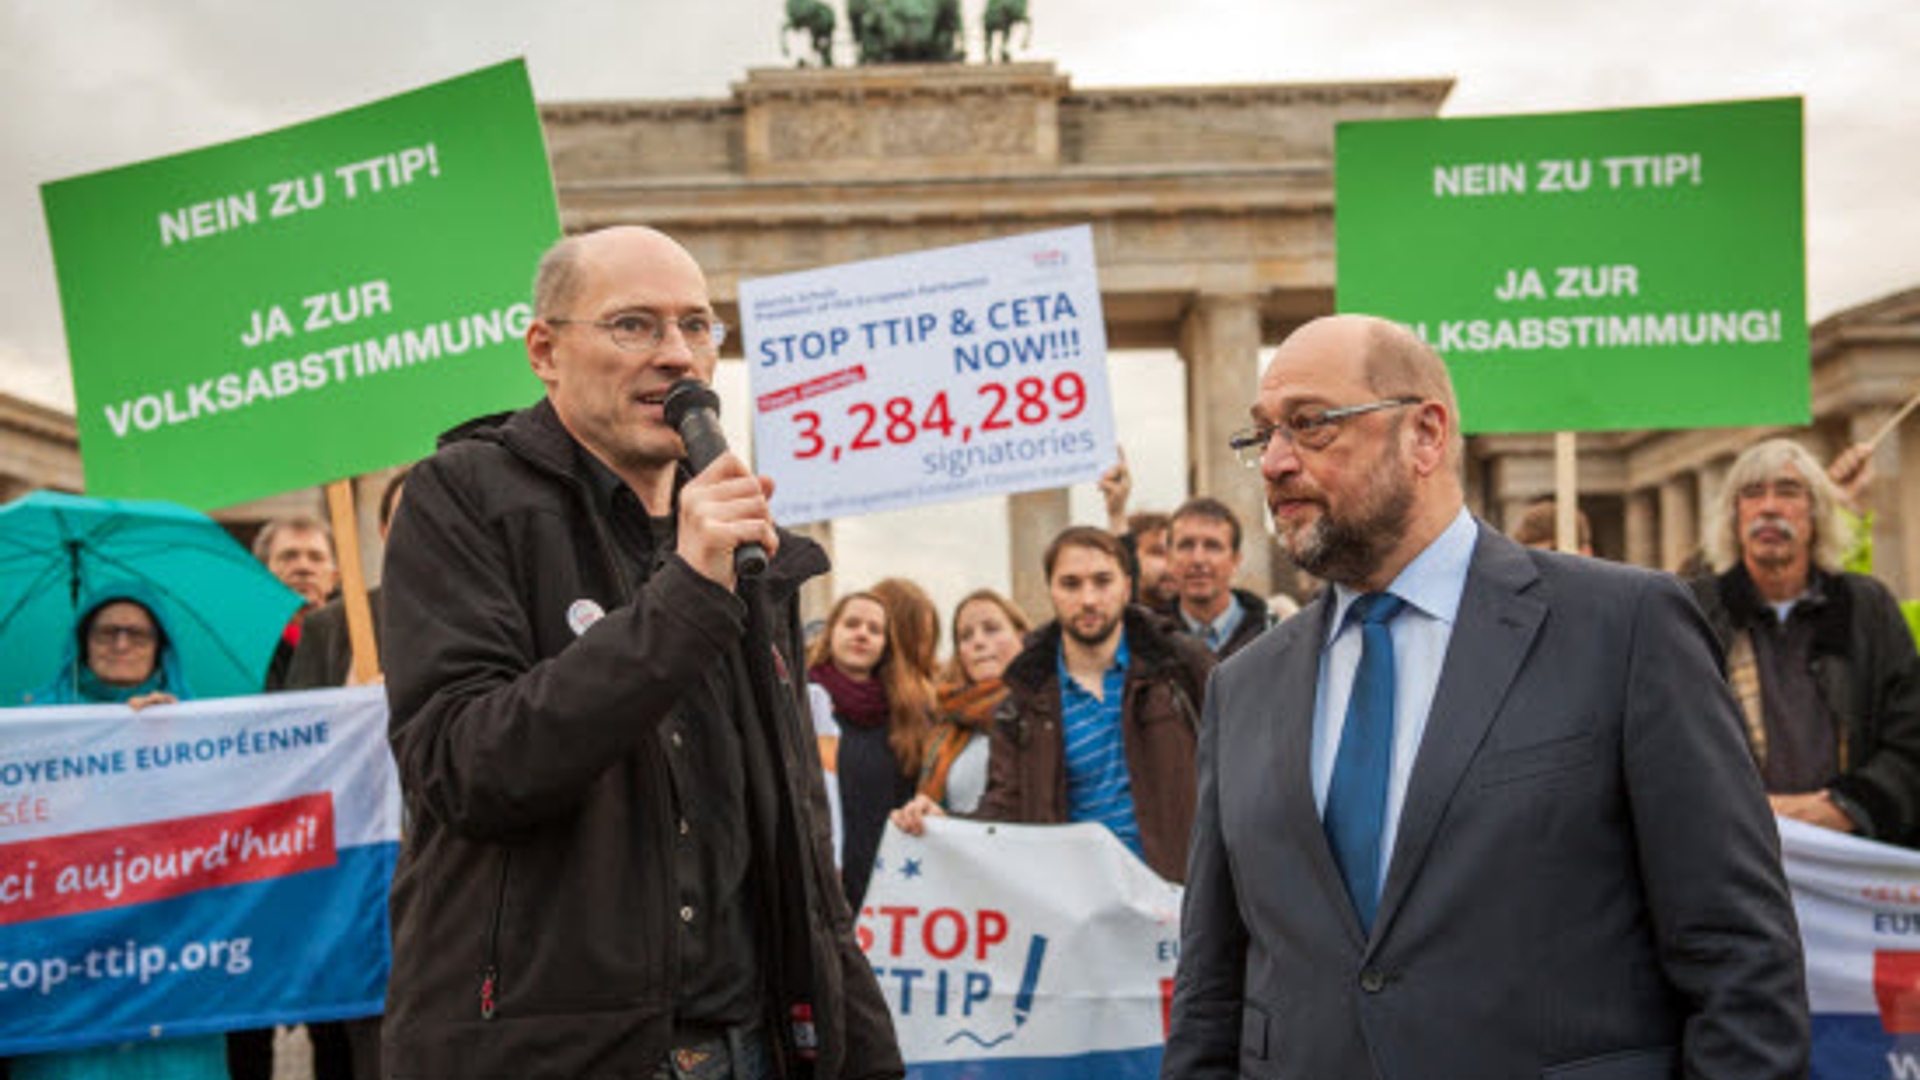 Stop-TTIP-hands-3284289-signatures-to-Martin-Schulz